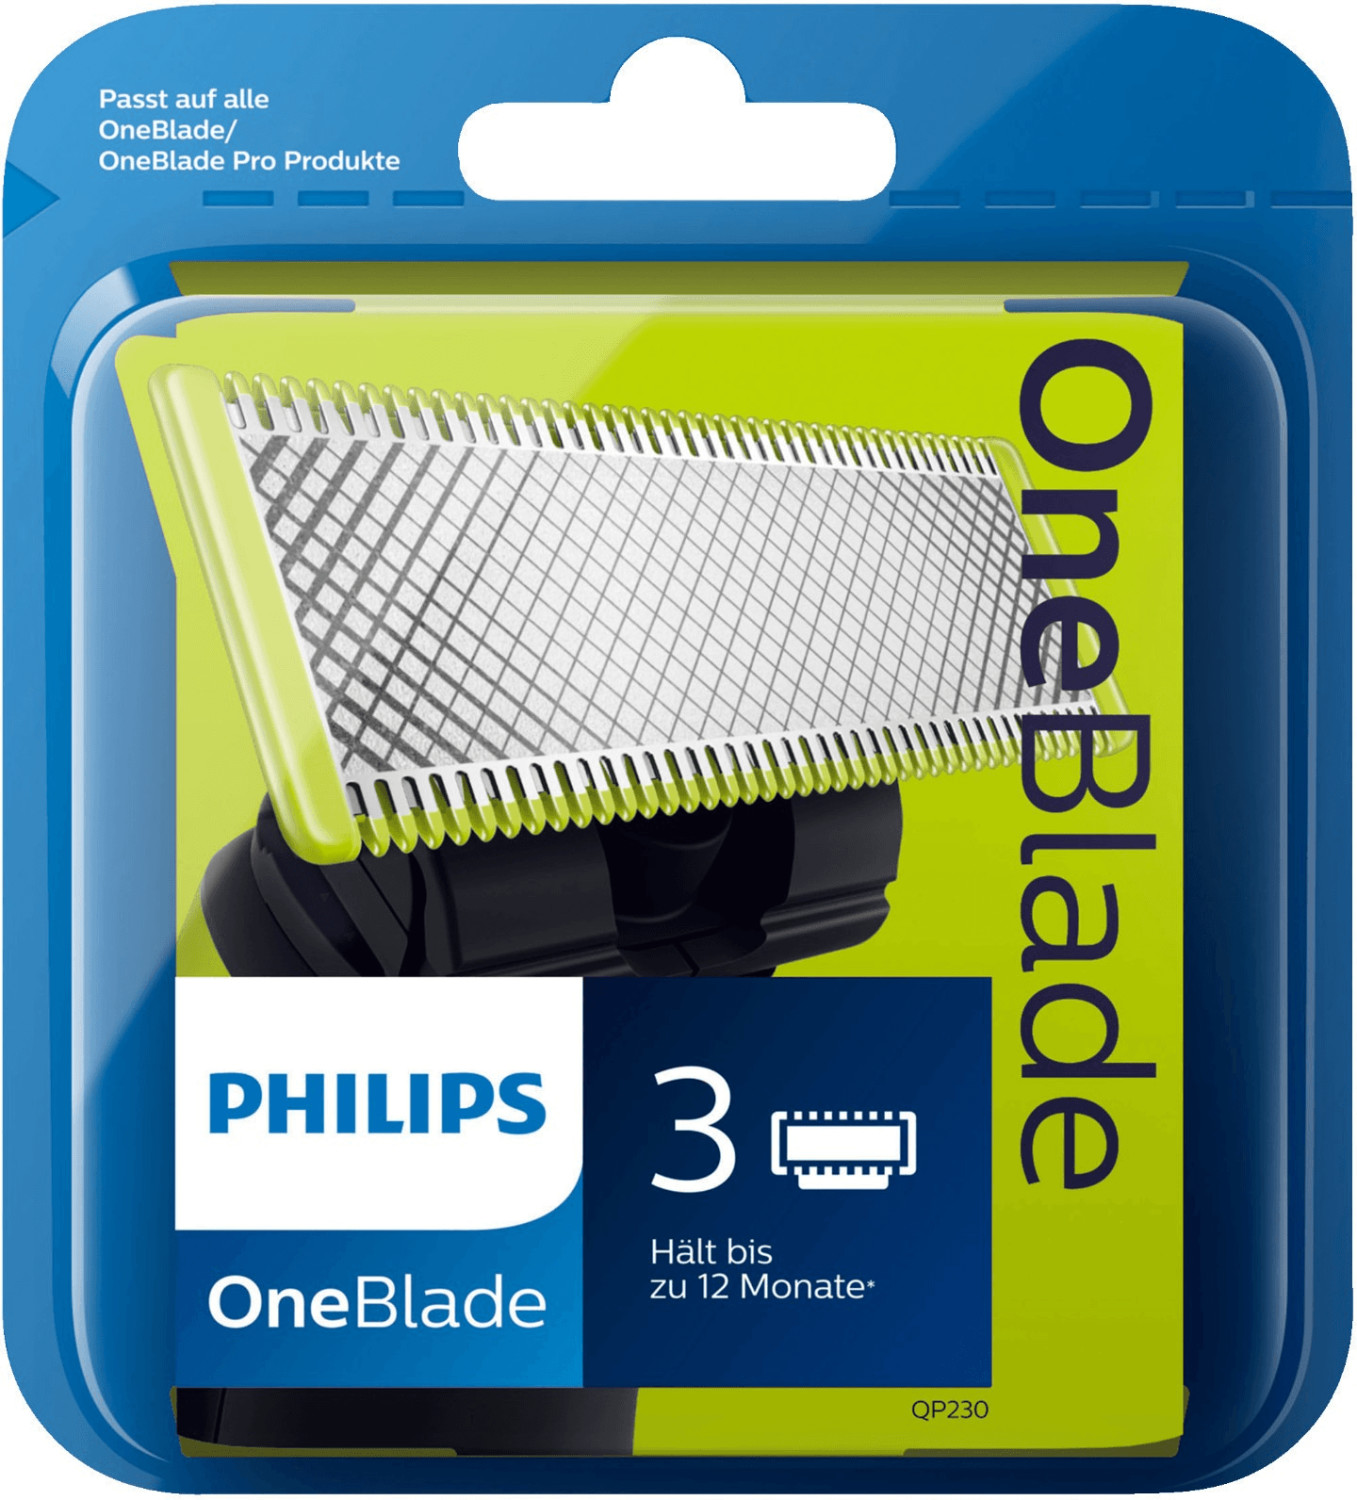 Philips Lames One Blade Qp310 50 (5 pcs) au meilleur prix sur